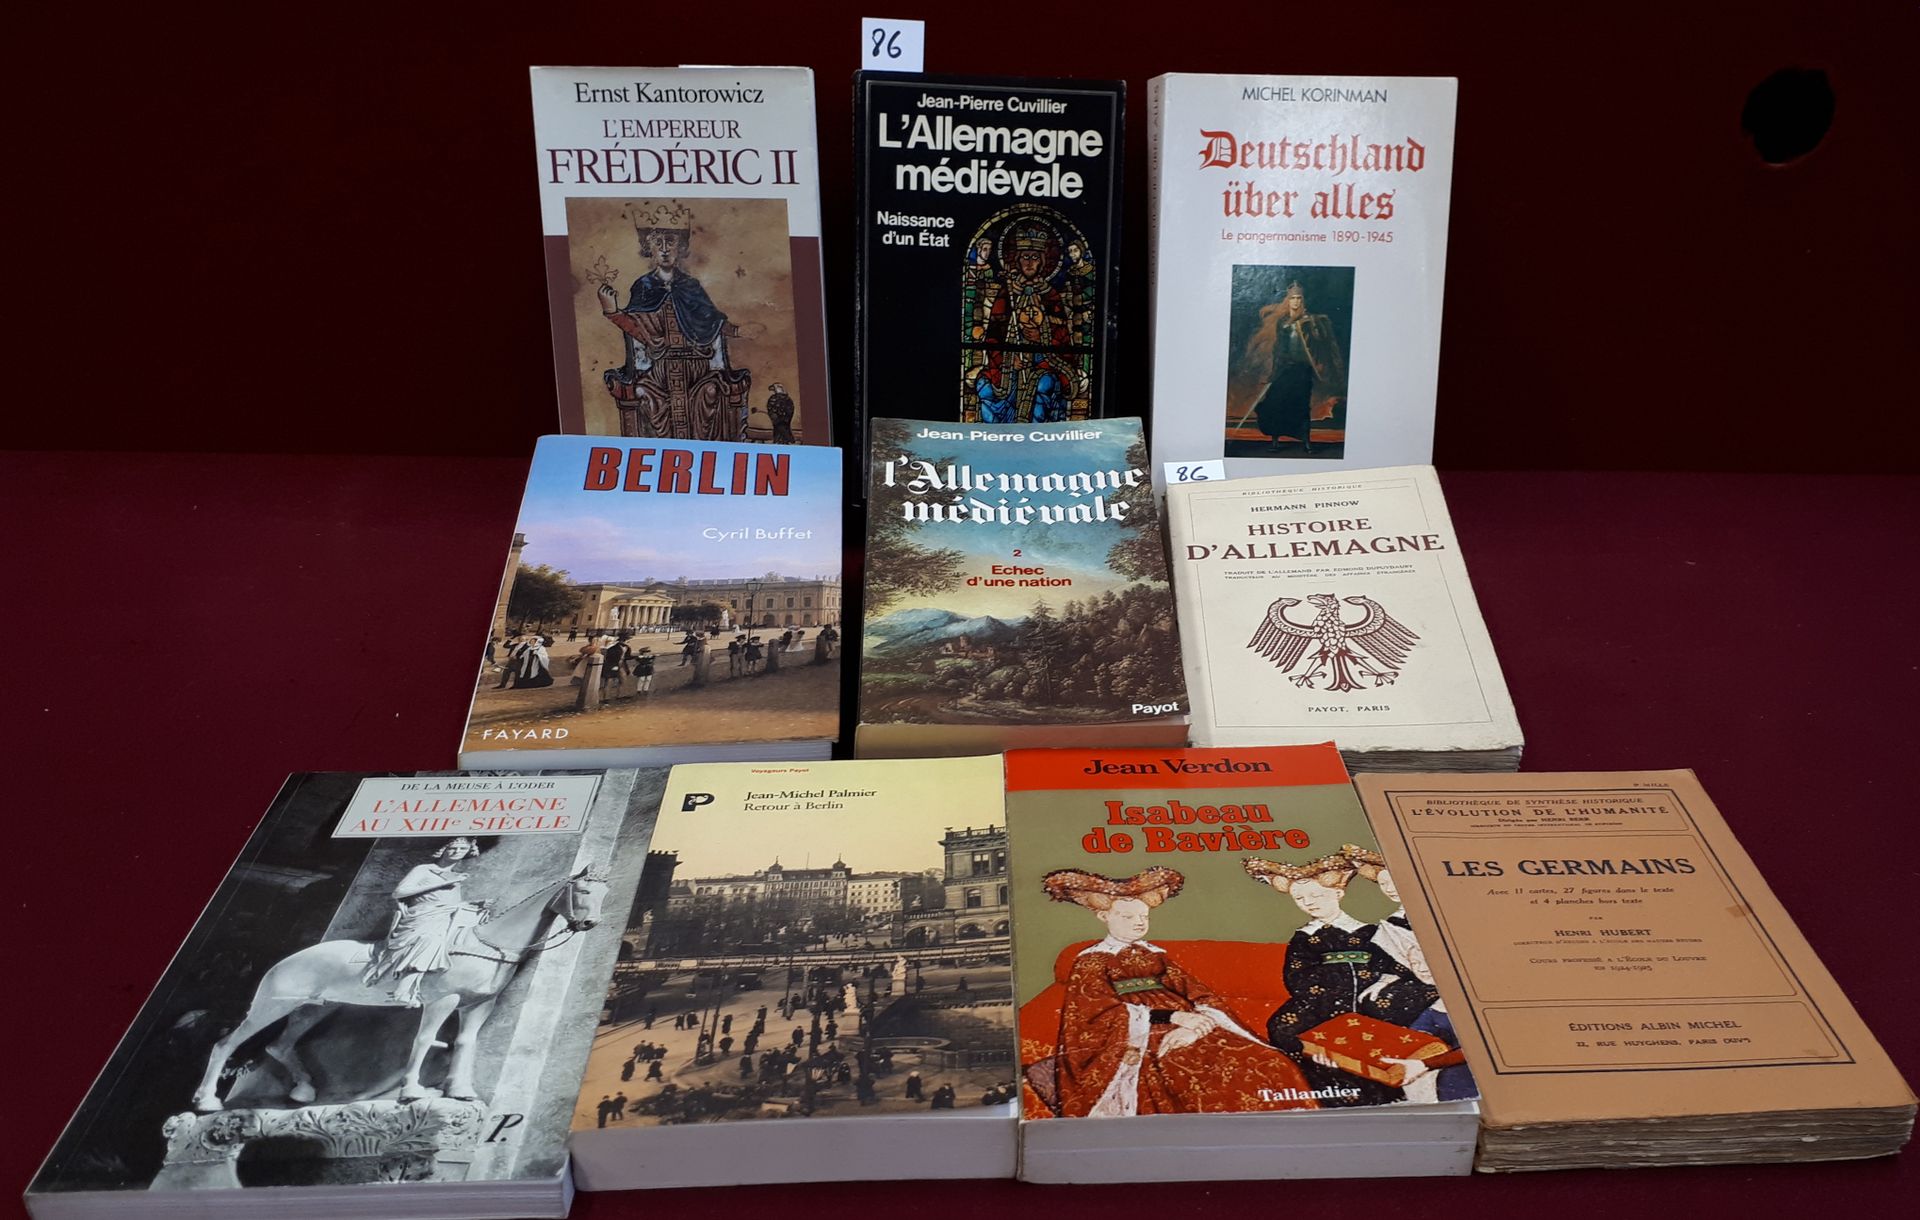 Allemagne Conjunto de 10 libros sobre Alemania, entre ellos: Alemania medieval